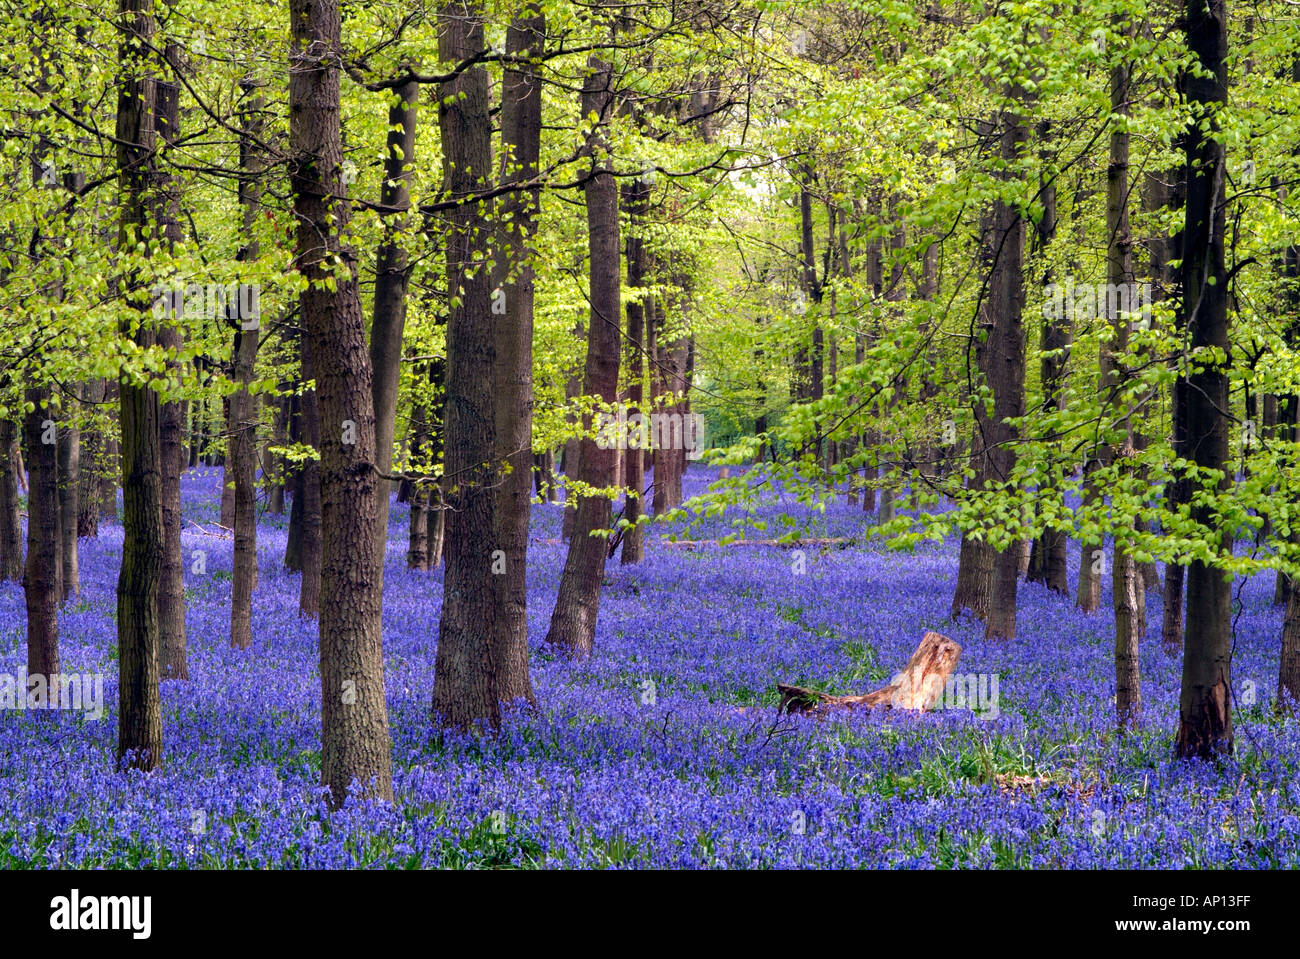 Bois de hêtre en jacinthes bleues et vertes éclatantes avec souche d'arbre pour le contraste Banque D'Images